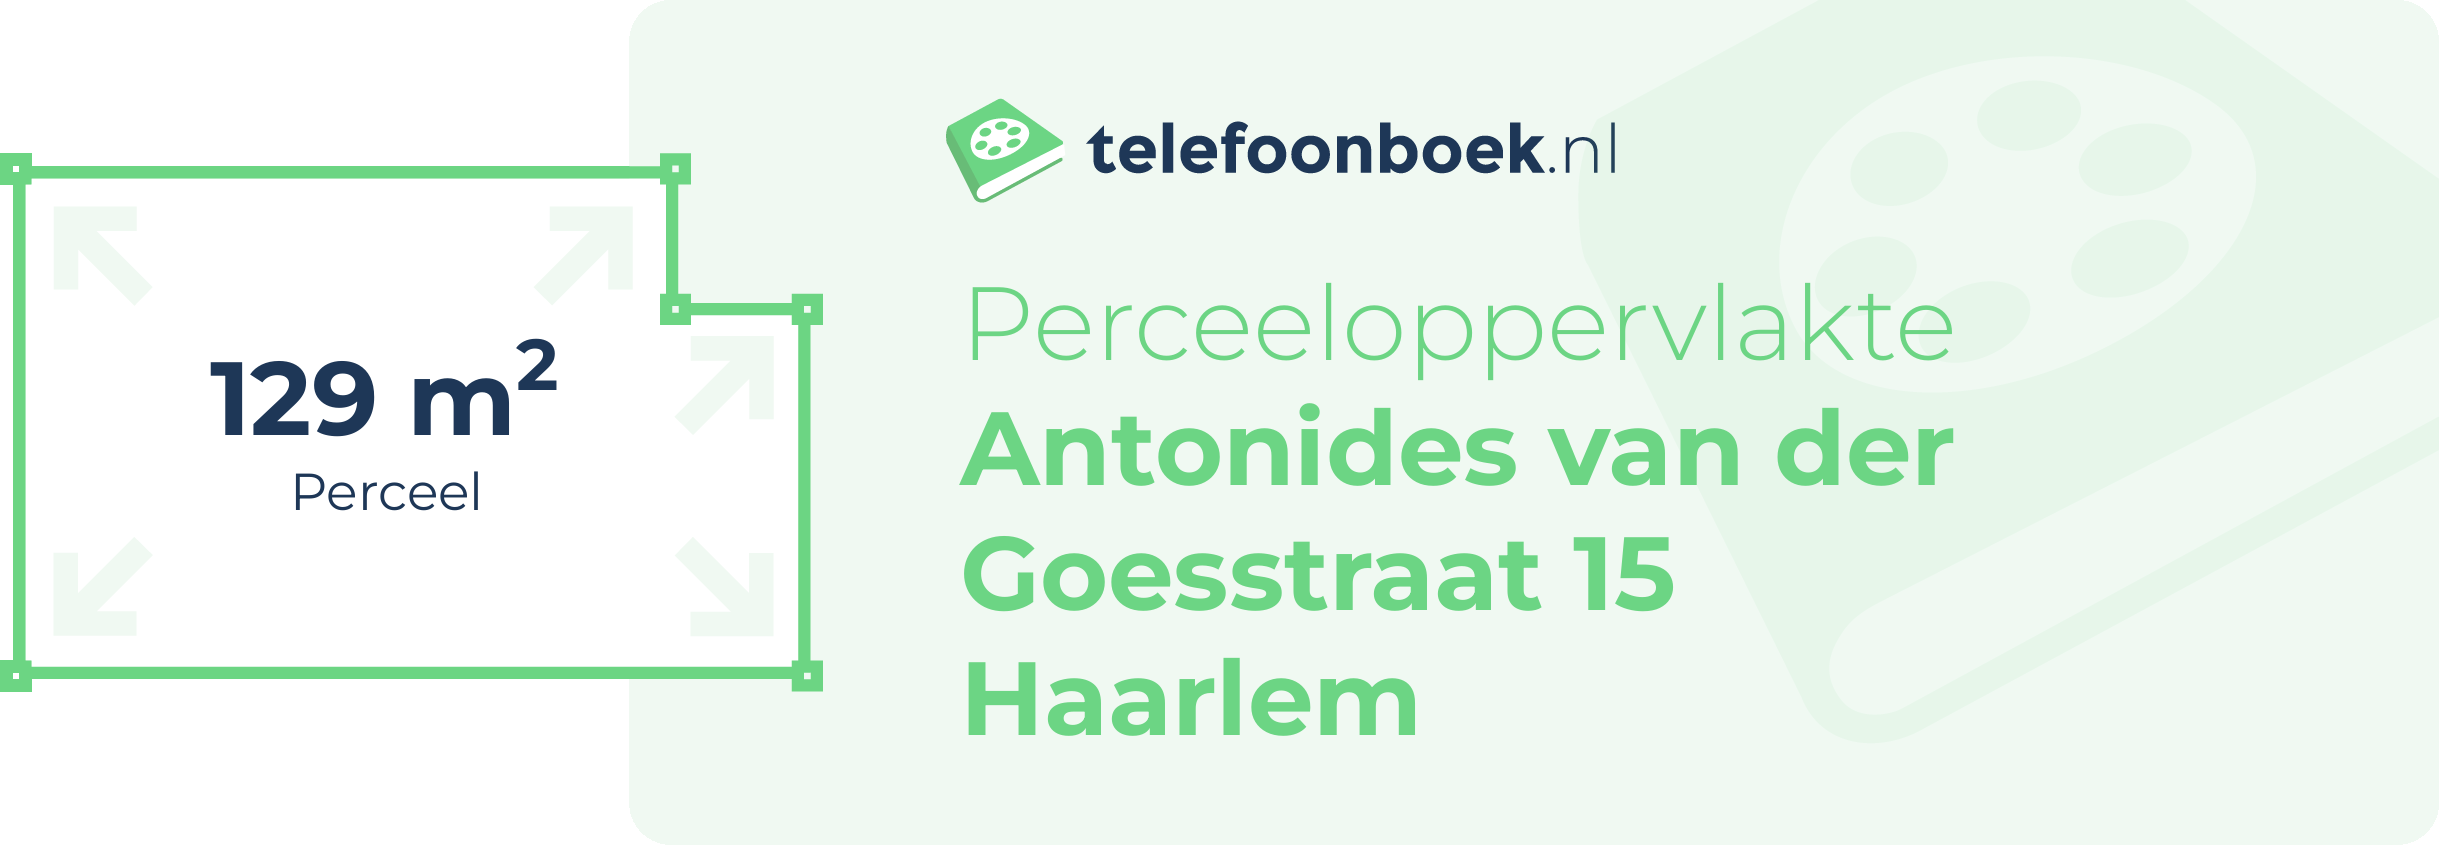 Perceeloppervlakte Antonides Van Der Goesstraat 15 Haarlem